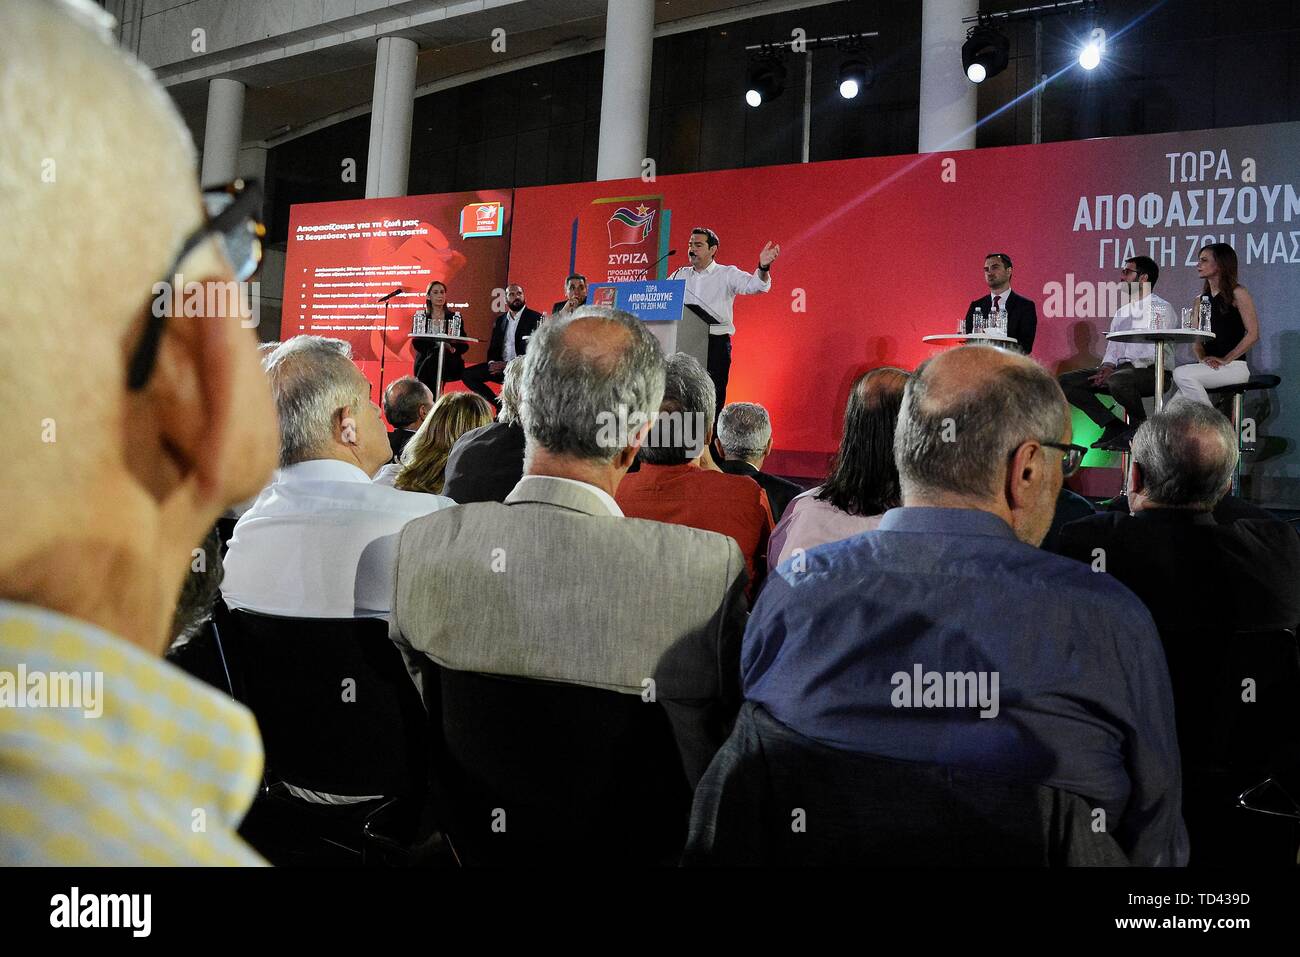 Primo Ministro greco, Alexis Tsipras, parla mentre facendo un gesto durante la presentazione di un programma politico di SYRIZA a Atene Concert Hall. Foto Stock